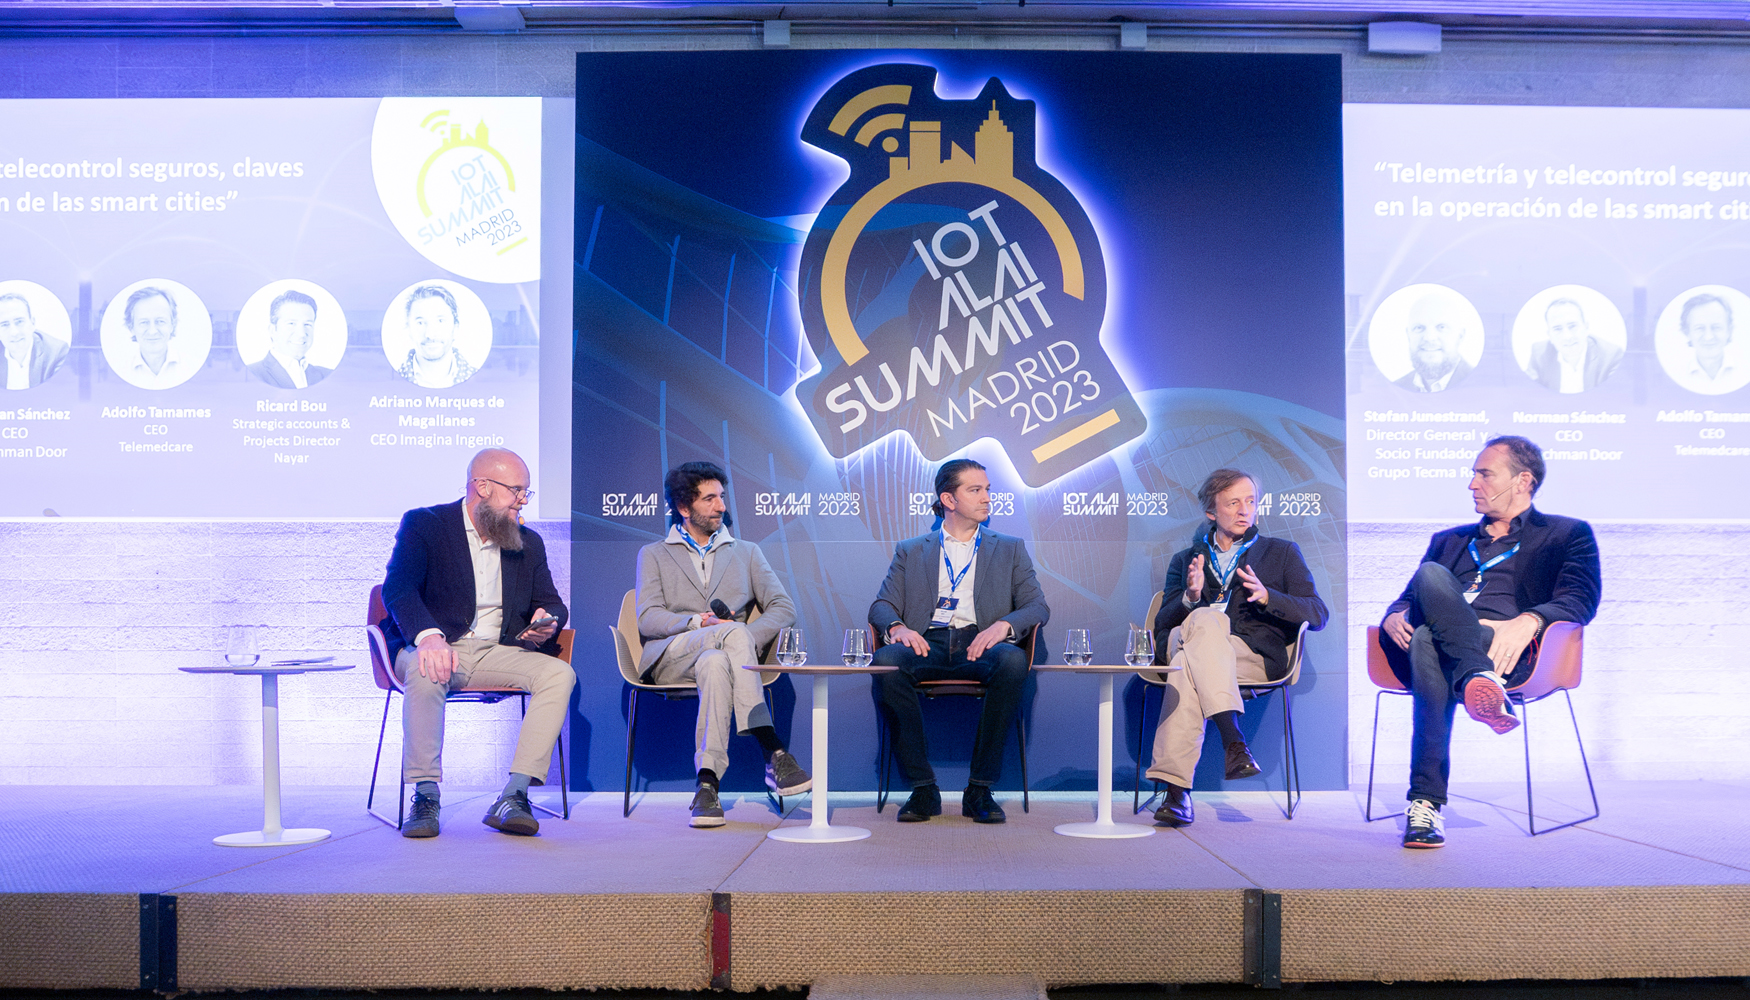 Segunda mesa redonda del Iot Alai Summit